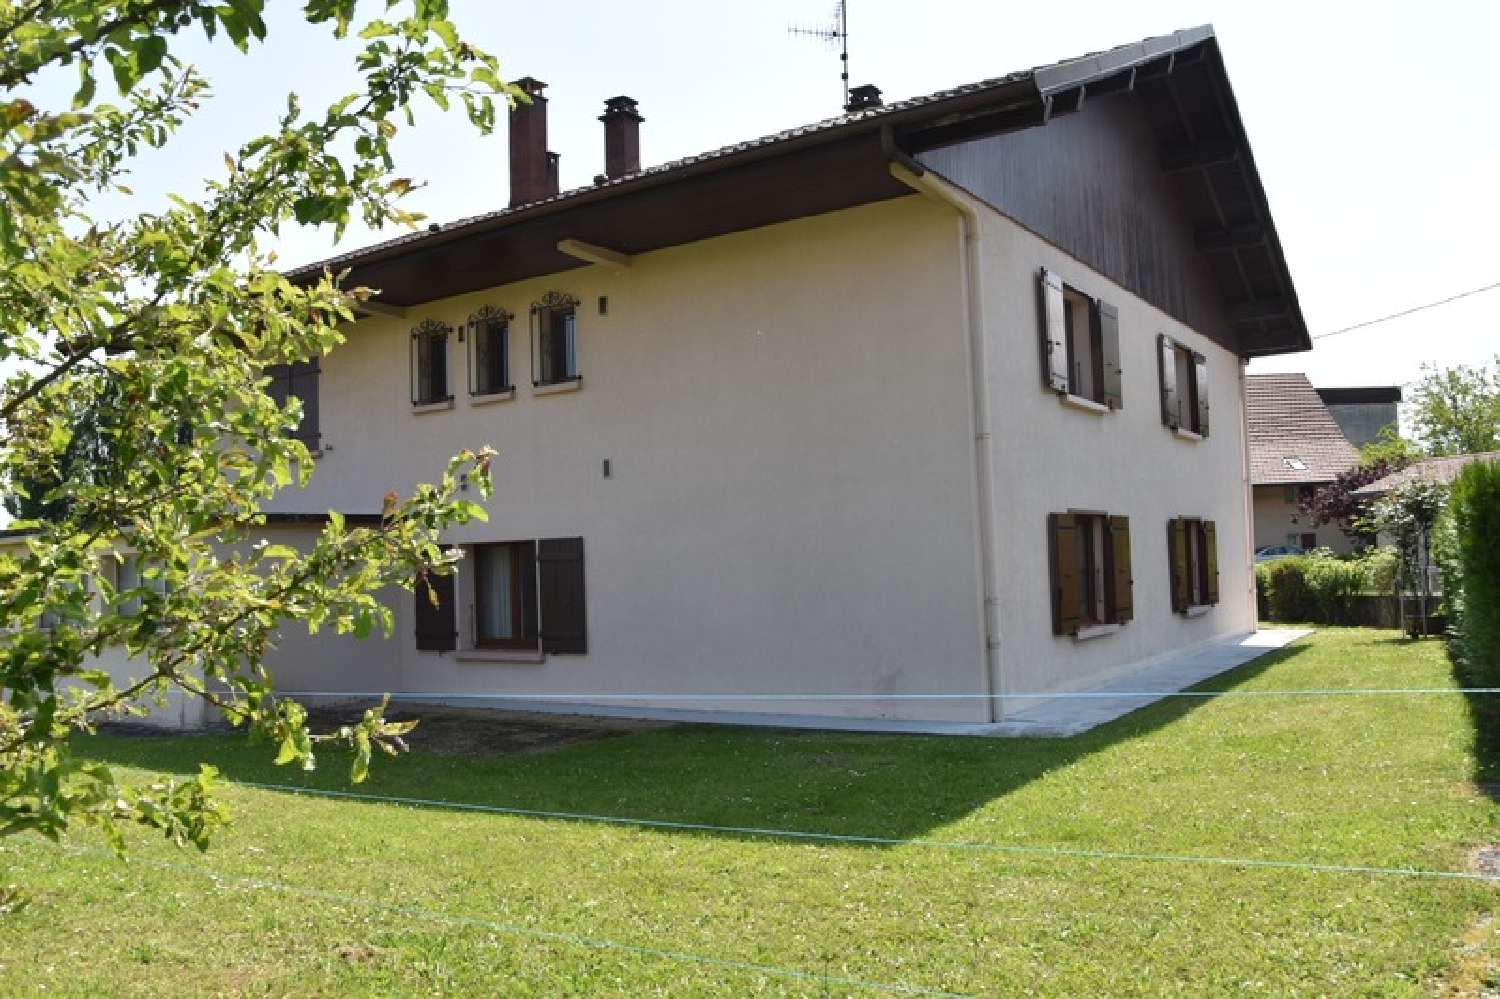  for sale house Cornier Haute-Savoie 4